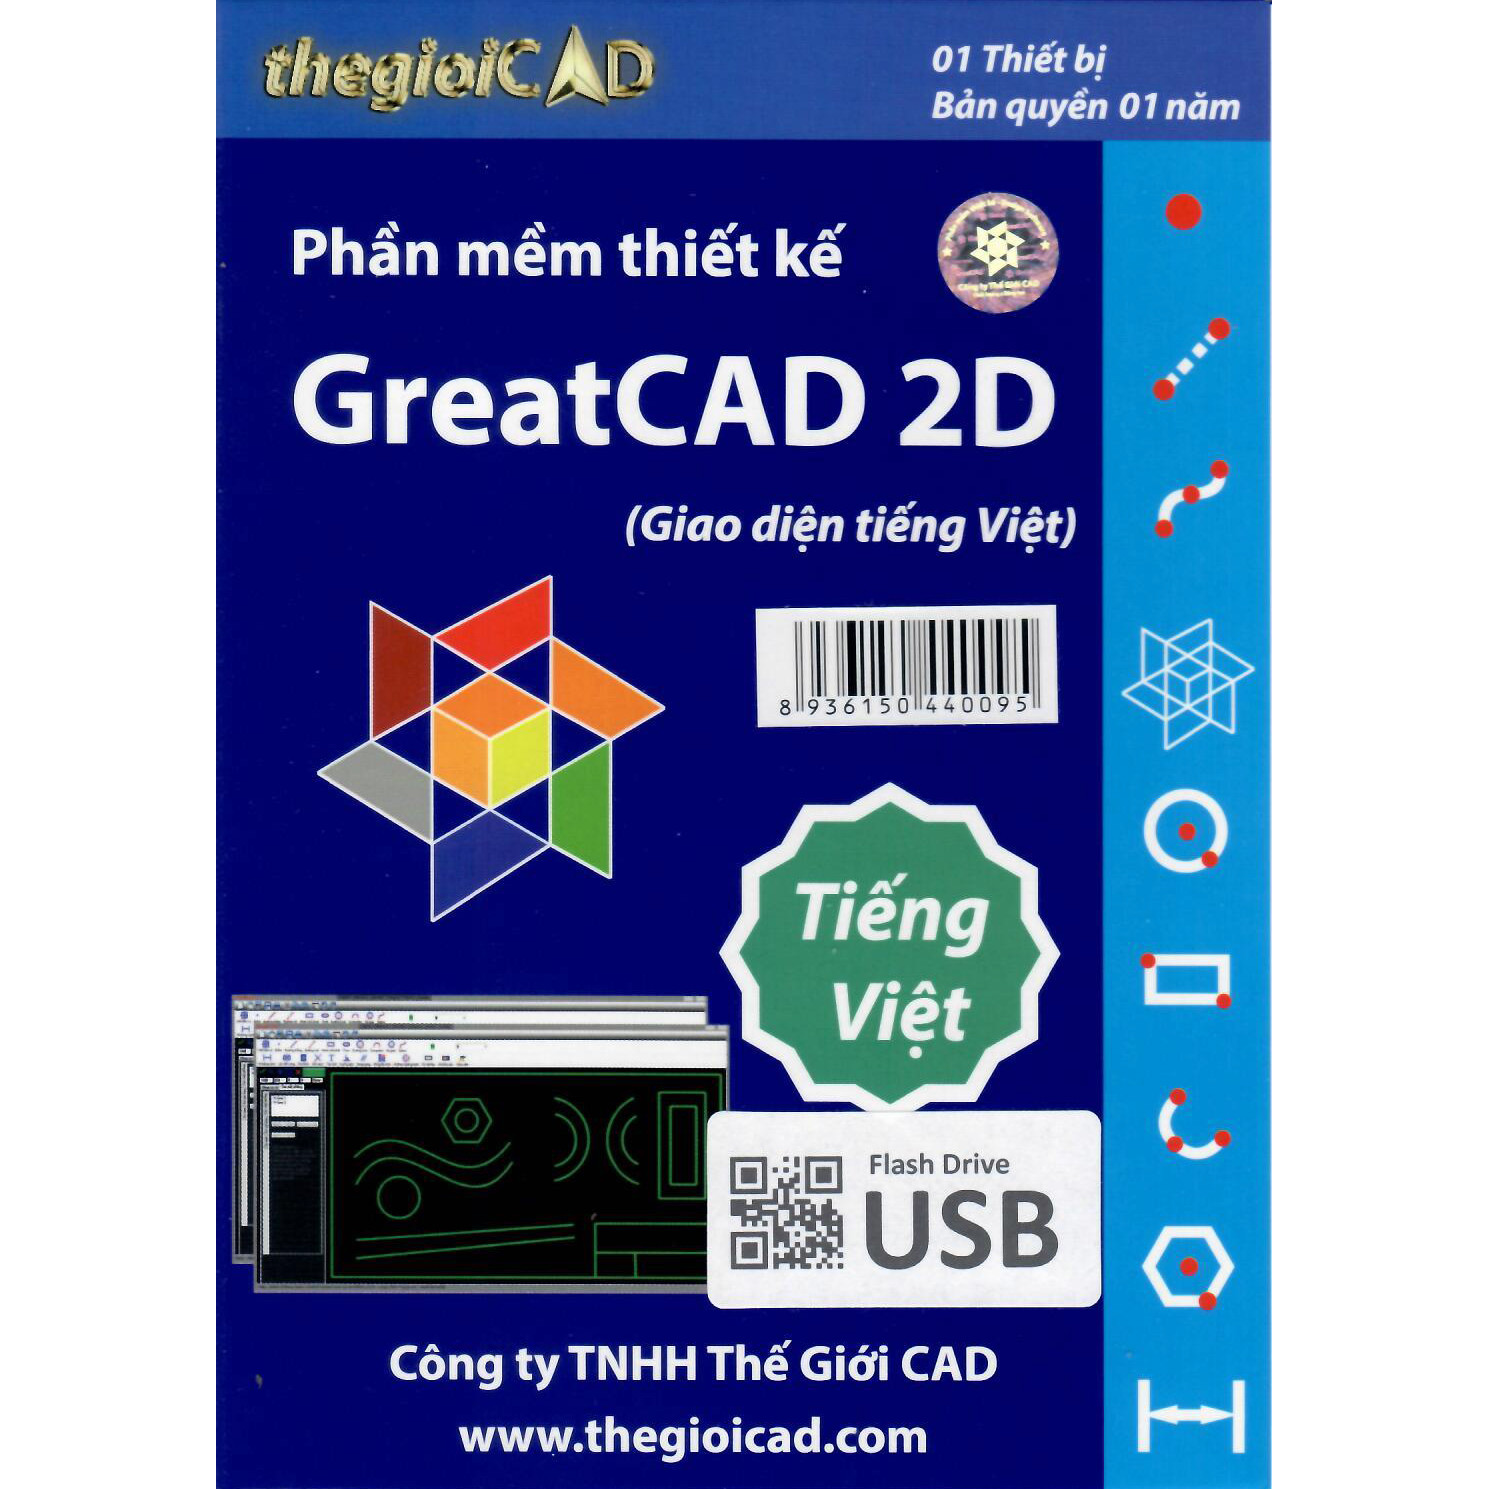 Phần mềm thiết kế GreatCAD phiên bản tiêu chuẩn 1.0.9.0 - Giao diện tiếng Việt (USB/04/2021) - Hàng Chính Hãng - Bản quyền 01 Năm